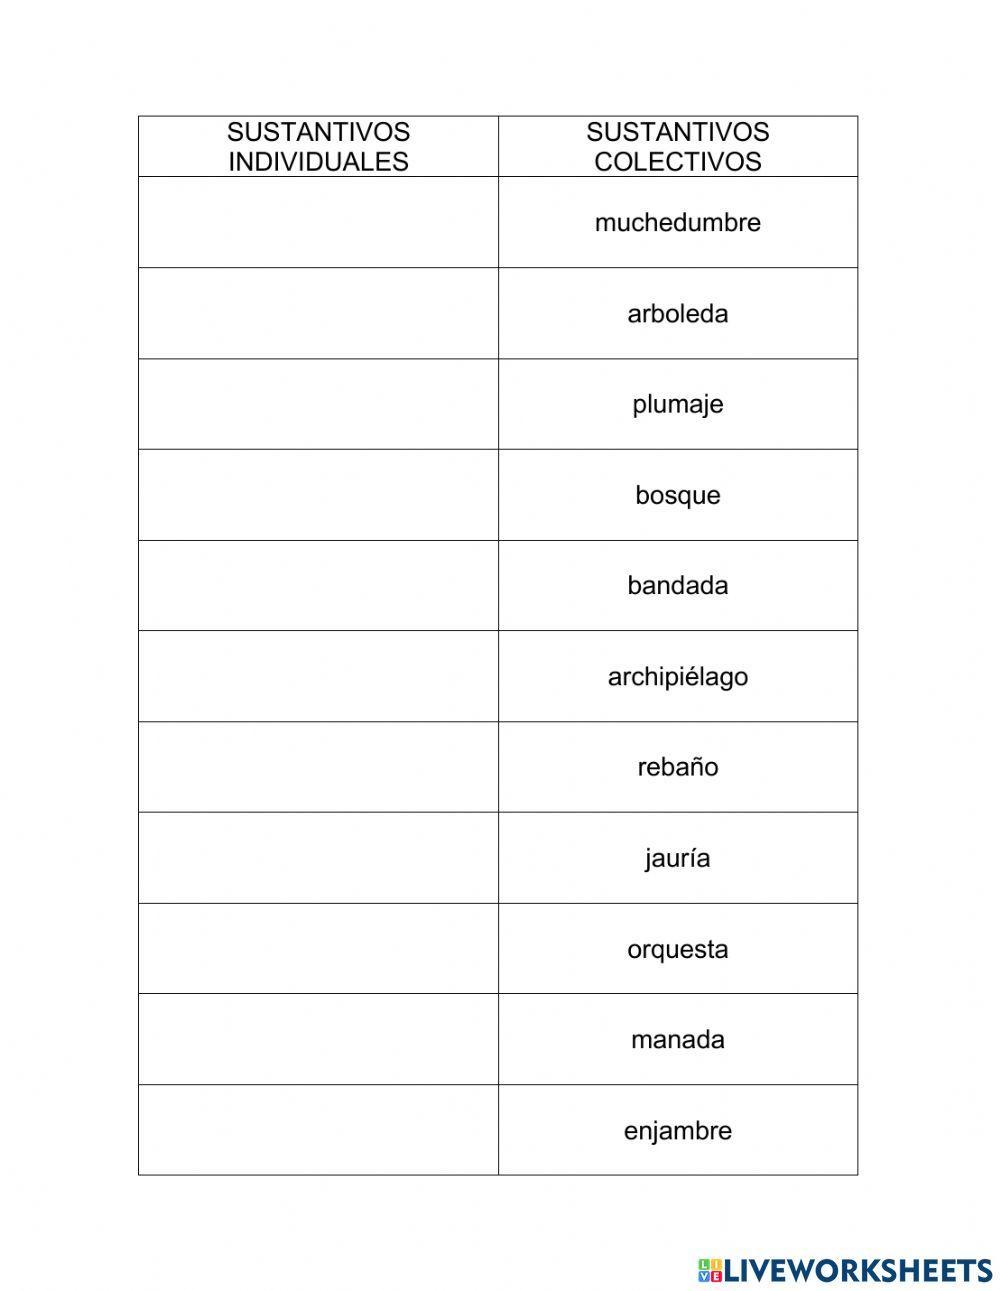 Sustantivos individuales y colectivos